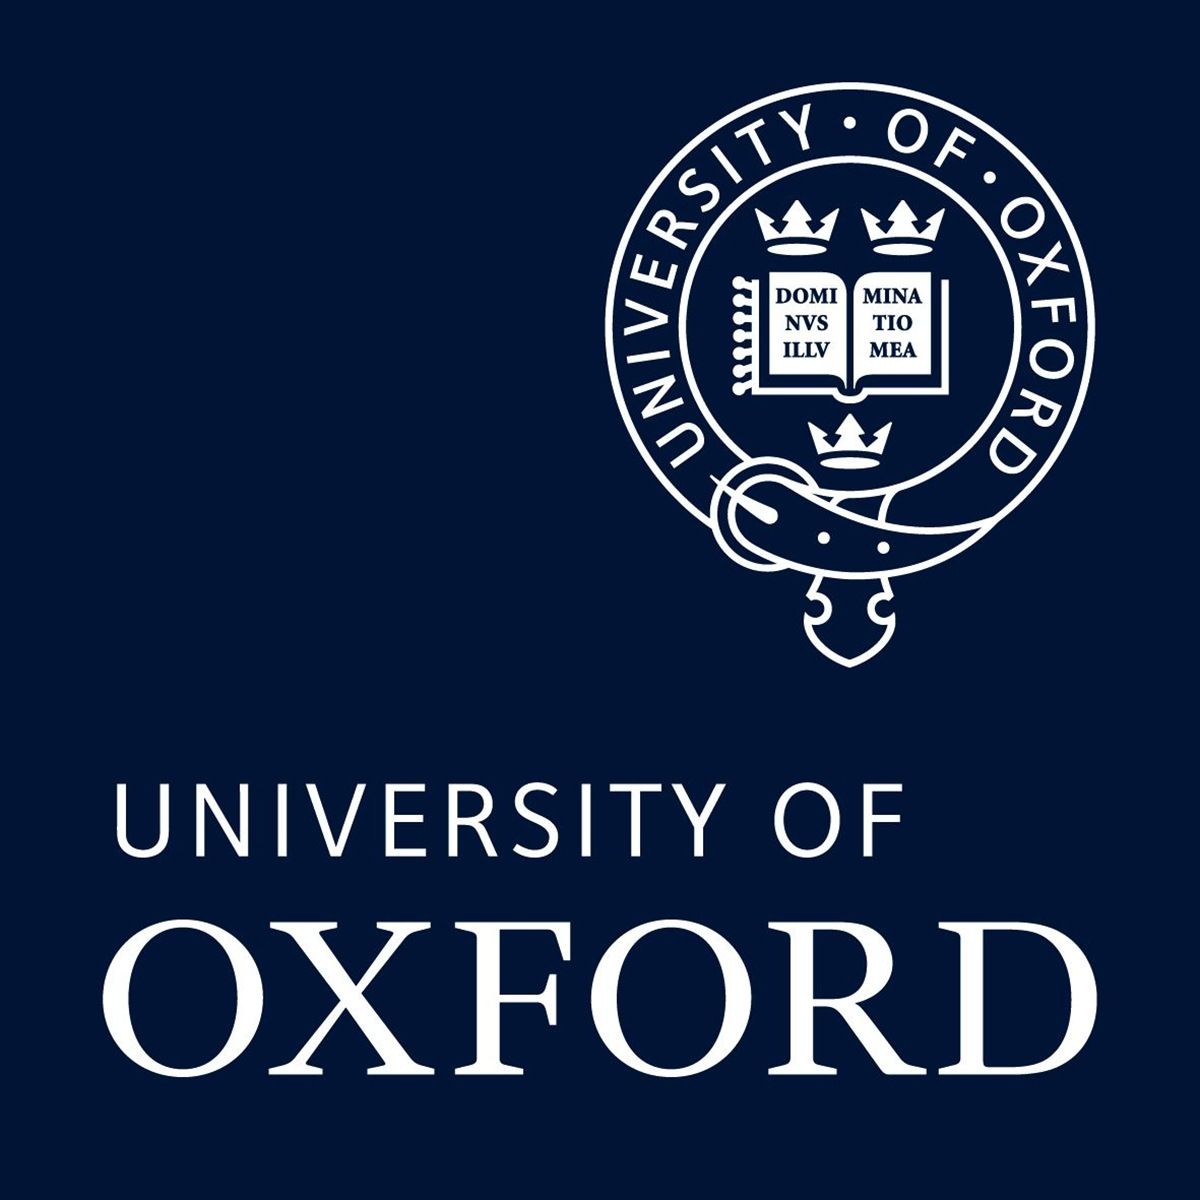 تصویر معروف ترین نماد دانشگاه آکسفورد با کیفیت ویژه